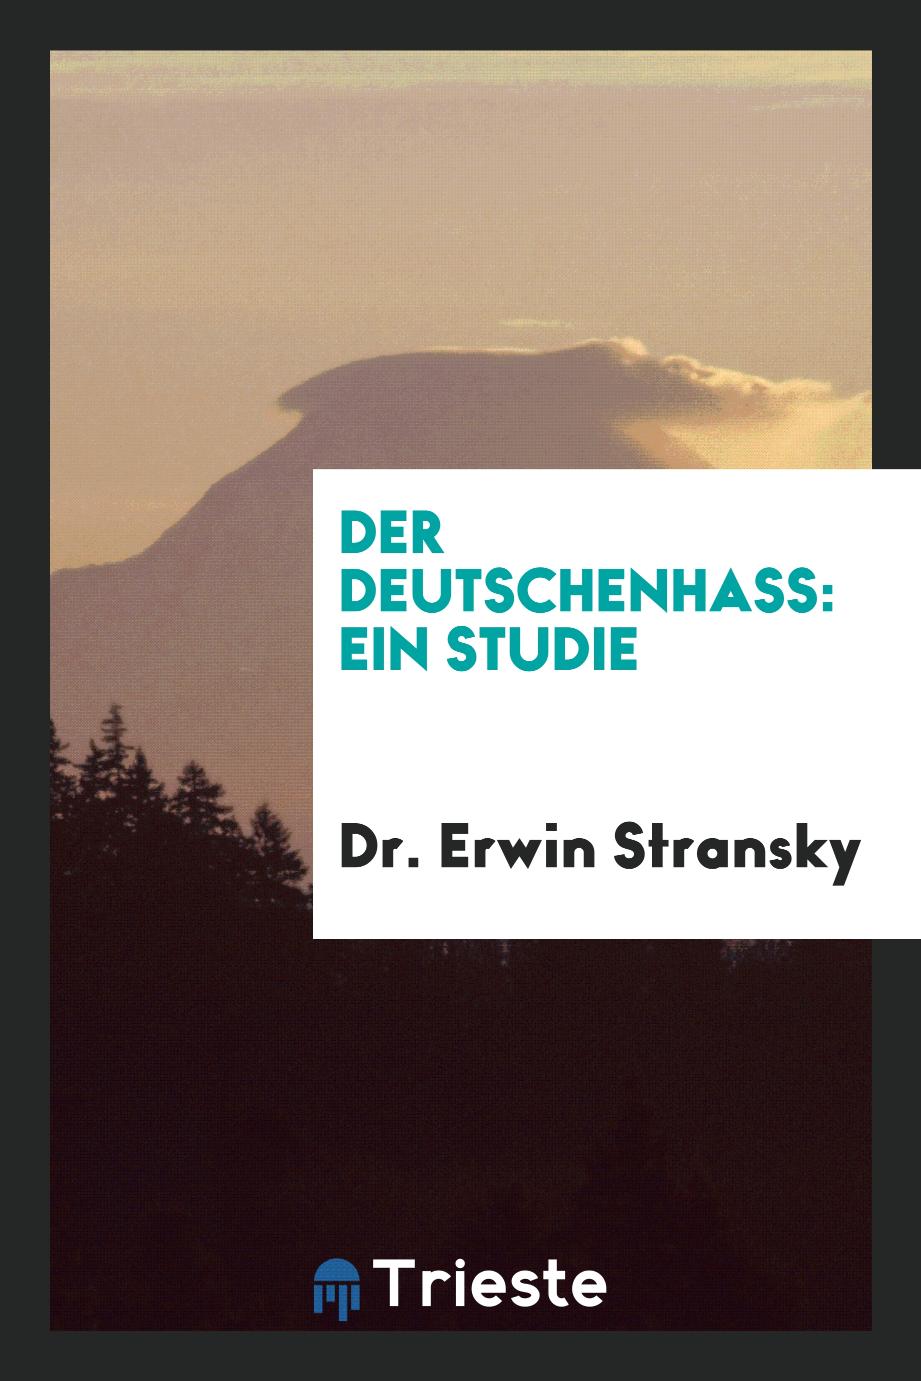 Dr. Erwin Stransky - Der Deutschenhass: Ein Studie